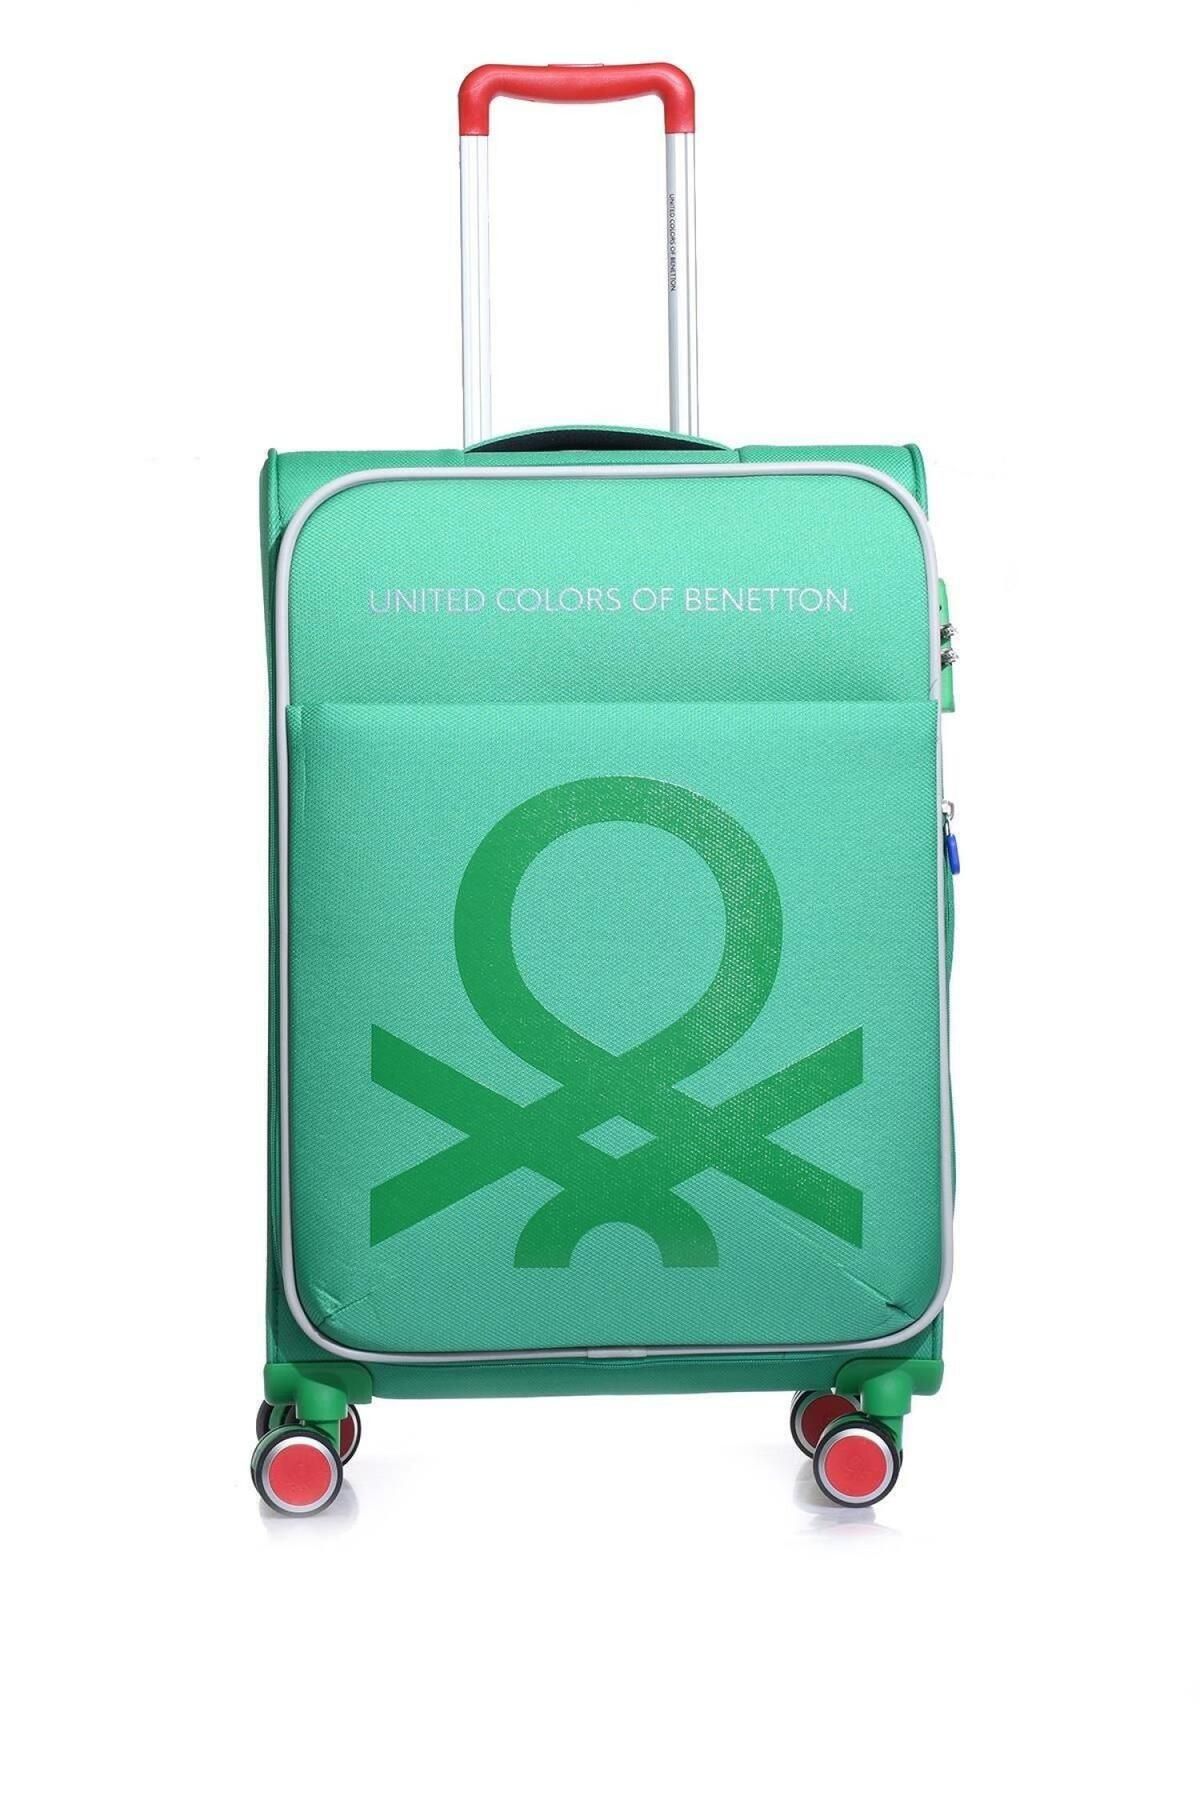 Benetton Yeşil Unisex Orta Boy Valiz 14bnt2200-02